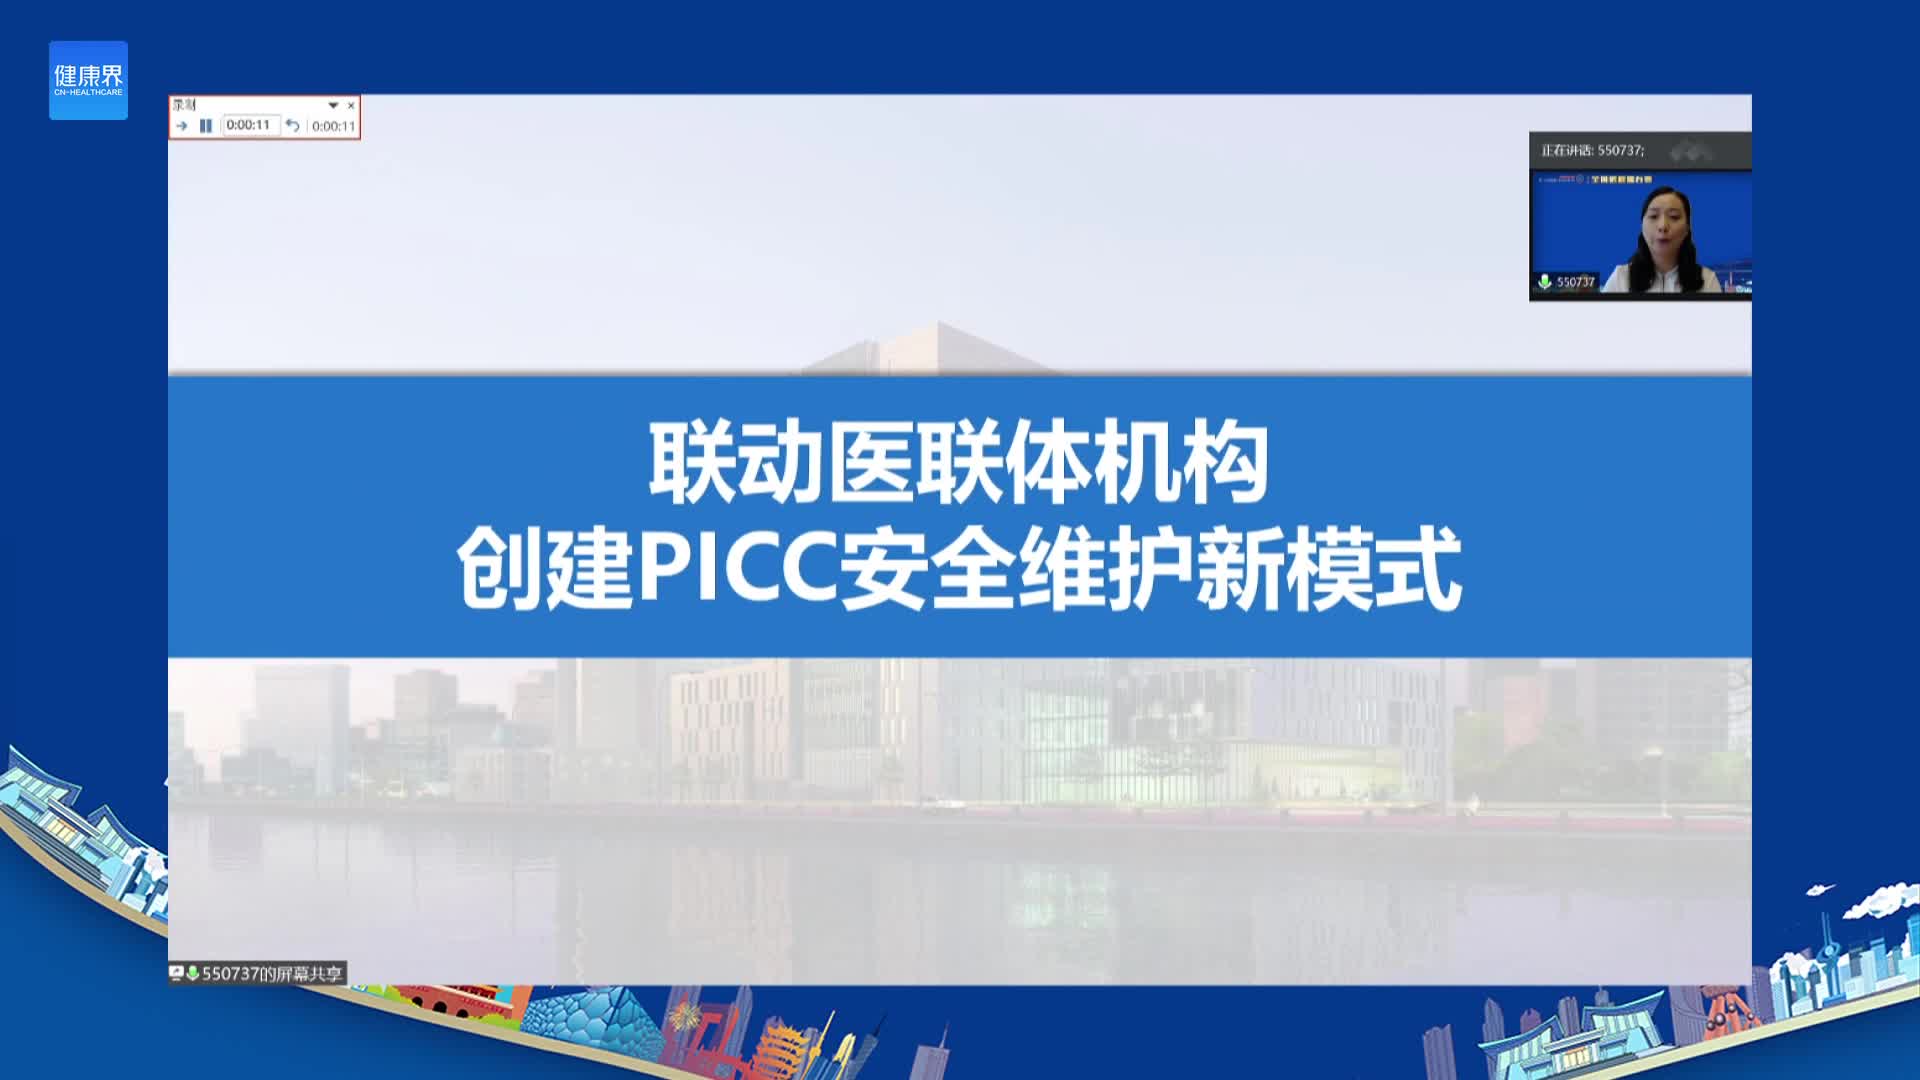 联动医联体机构创建PICC安全维护新模式